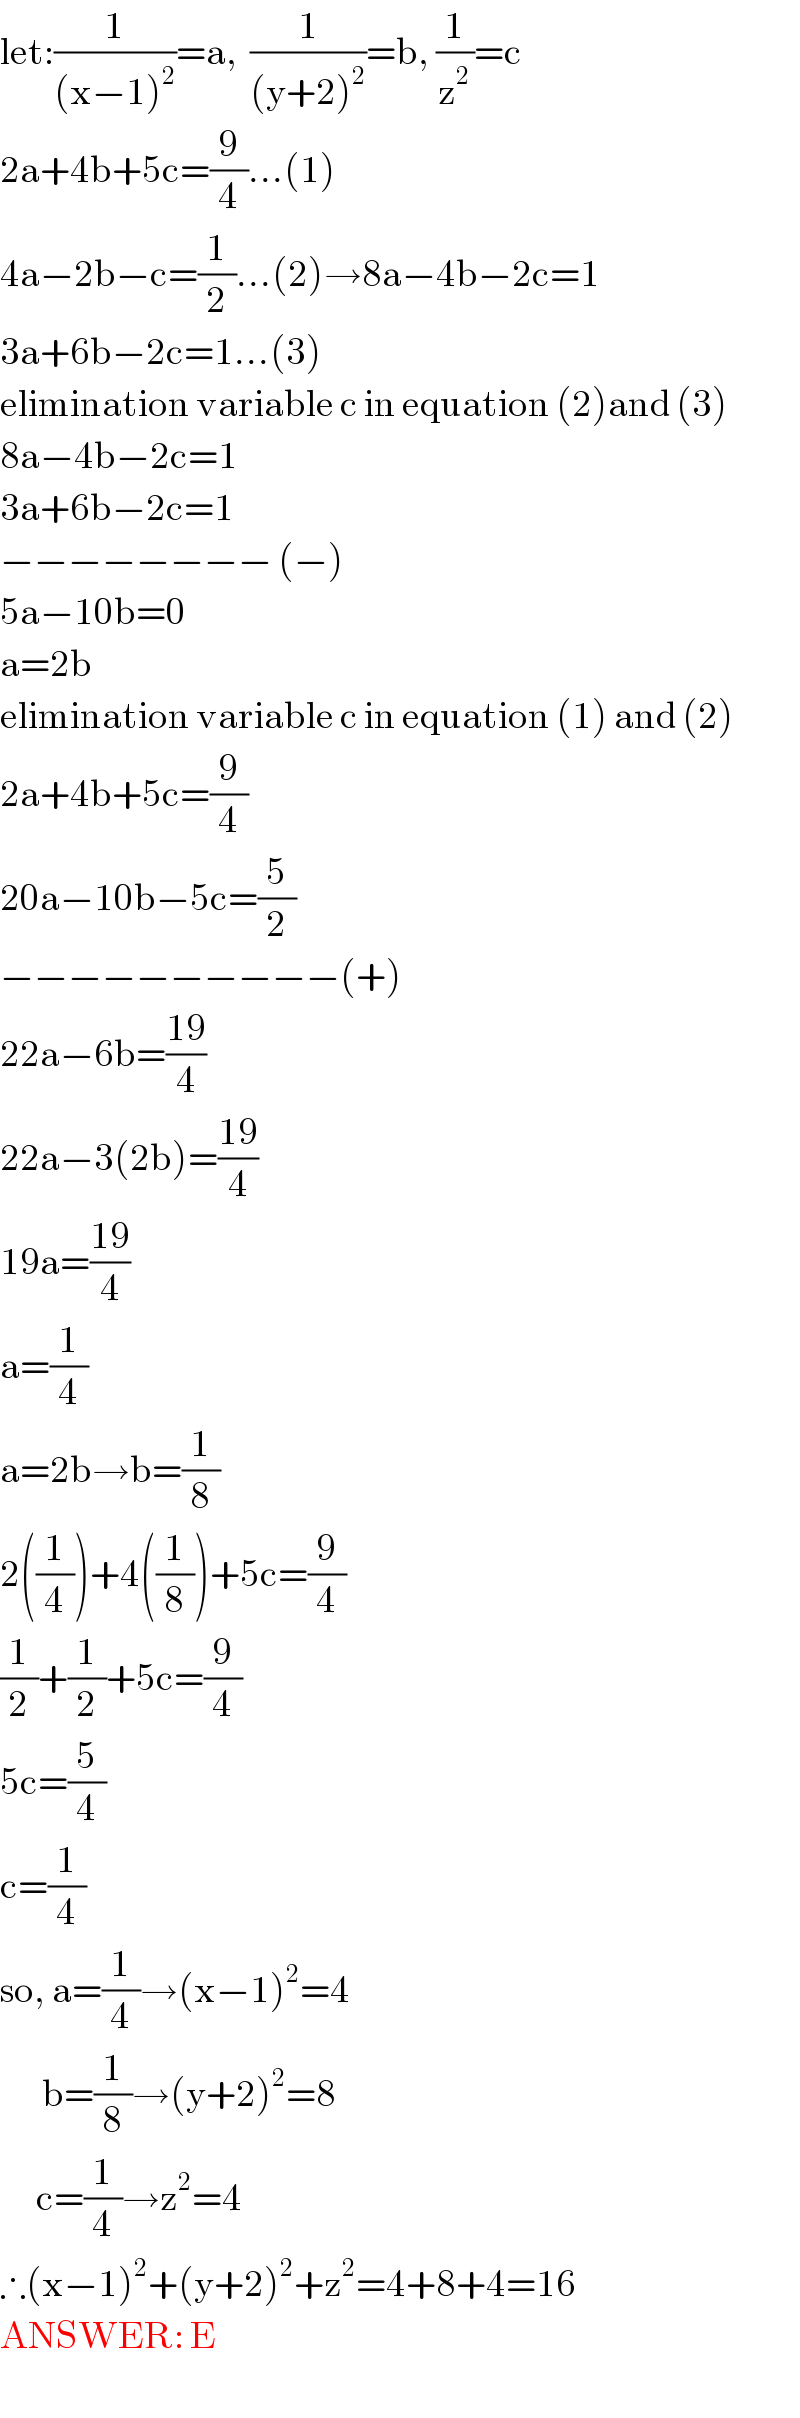 let:(1/((x−1)^2 ))=a,  (1/((y+2)^2 ))=b, (1/z^2 )=c  2a+4b+5c=(9/4)...(1)  4a−2b−c=(1/2)...(2)→8a−4b−2c=1  3a+6b−2c=1...(3)  elimination variable c in equation (2)and (3)  8a−4b−2c=1  3a+6b−2c=1  −−−−−−−− (−)  5a−10b=0  a=2b  elimination variable c in equation (1) and (2)  2a+4b+5c=(9/4)  20a−10b−5c=(5/2)  −−−−−−−−−−(+)  22a−6b=((19)/4)  22a−3(2b)=((19)/4)  19a=((19)/4)  a=(1/4)  a=2b→b=(1/8)  2((1/4))+4((1/8))+5c=(9/4)  (1/2)+(1/2)+5c=(9/4)  5c=(5/4)  c=(1/4)  so, a=(1/4)→(x−1)^2 =4         b=(1/8)→(y+2)^2 =8        c=(1/4)→z^2 =4  ∴(x−1)^2 +(y+2)^2 +z^2 =4+8+4=16  ANSWER: E  